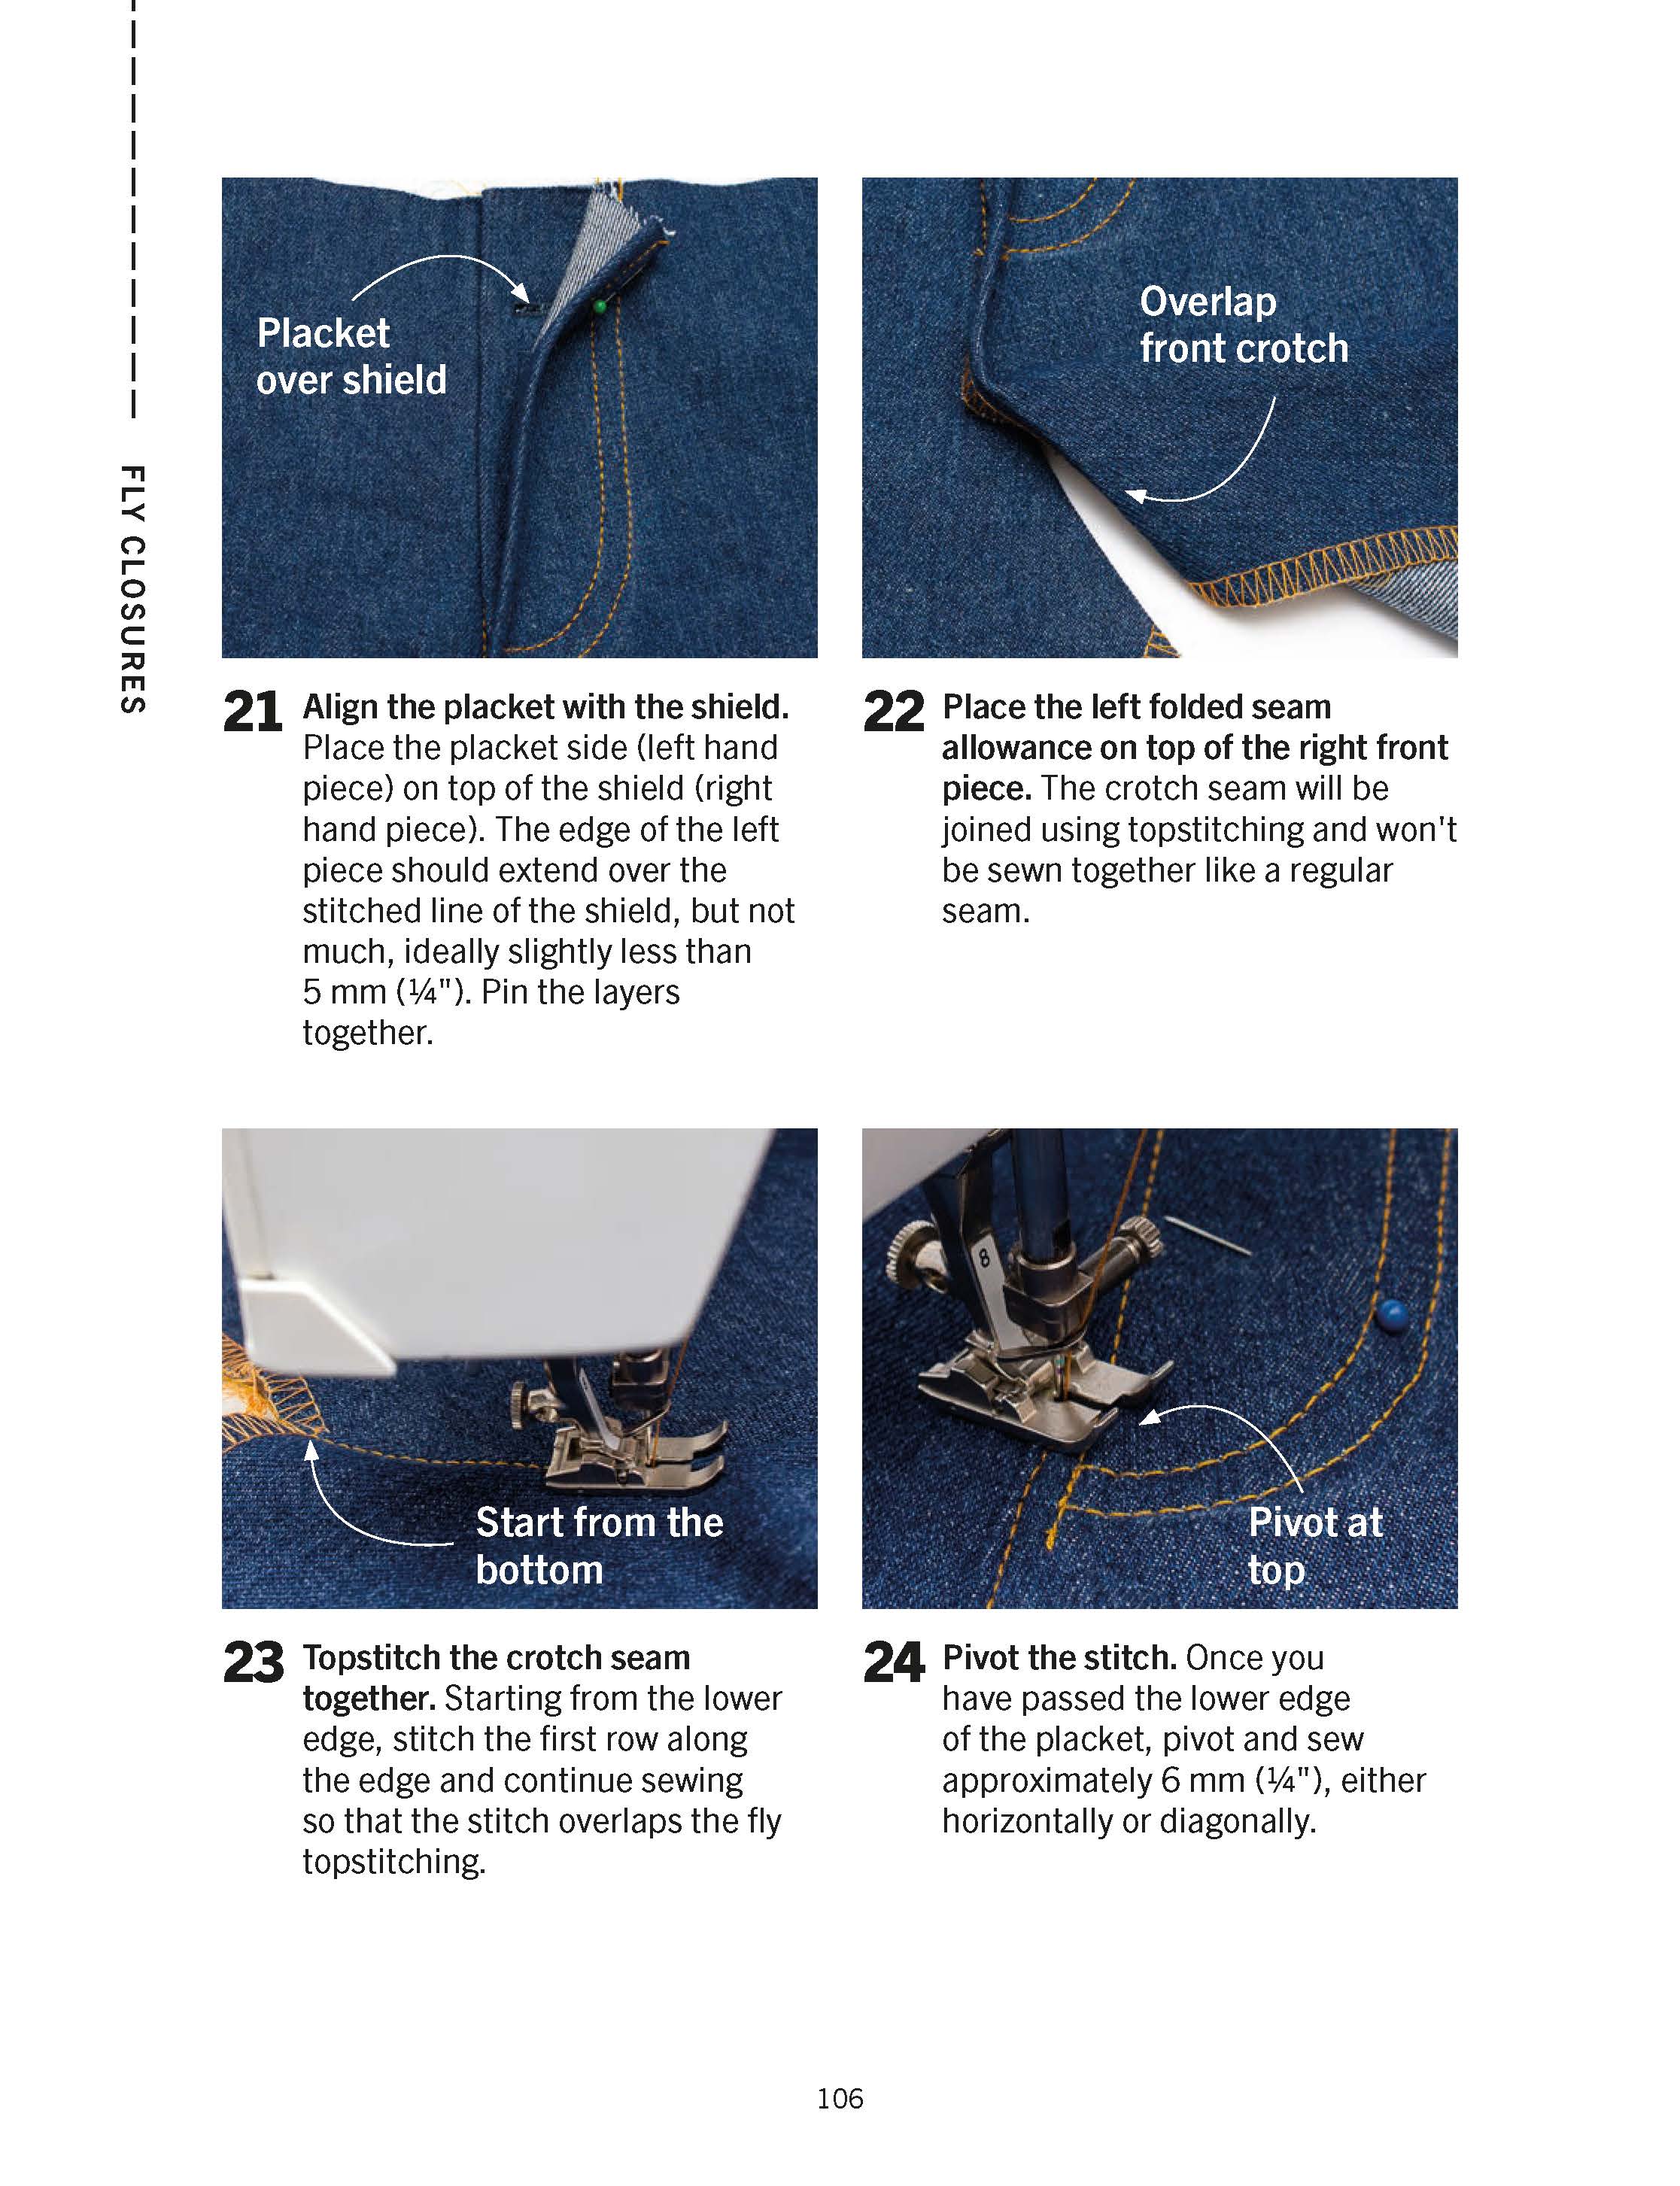 Sewing Jeans + Master the Coverstitch Machine - Ebook Bundle (PDF)